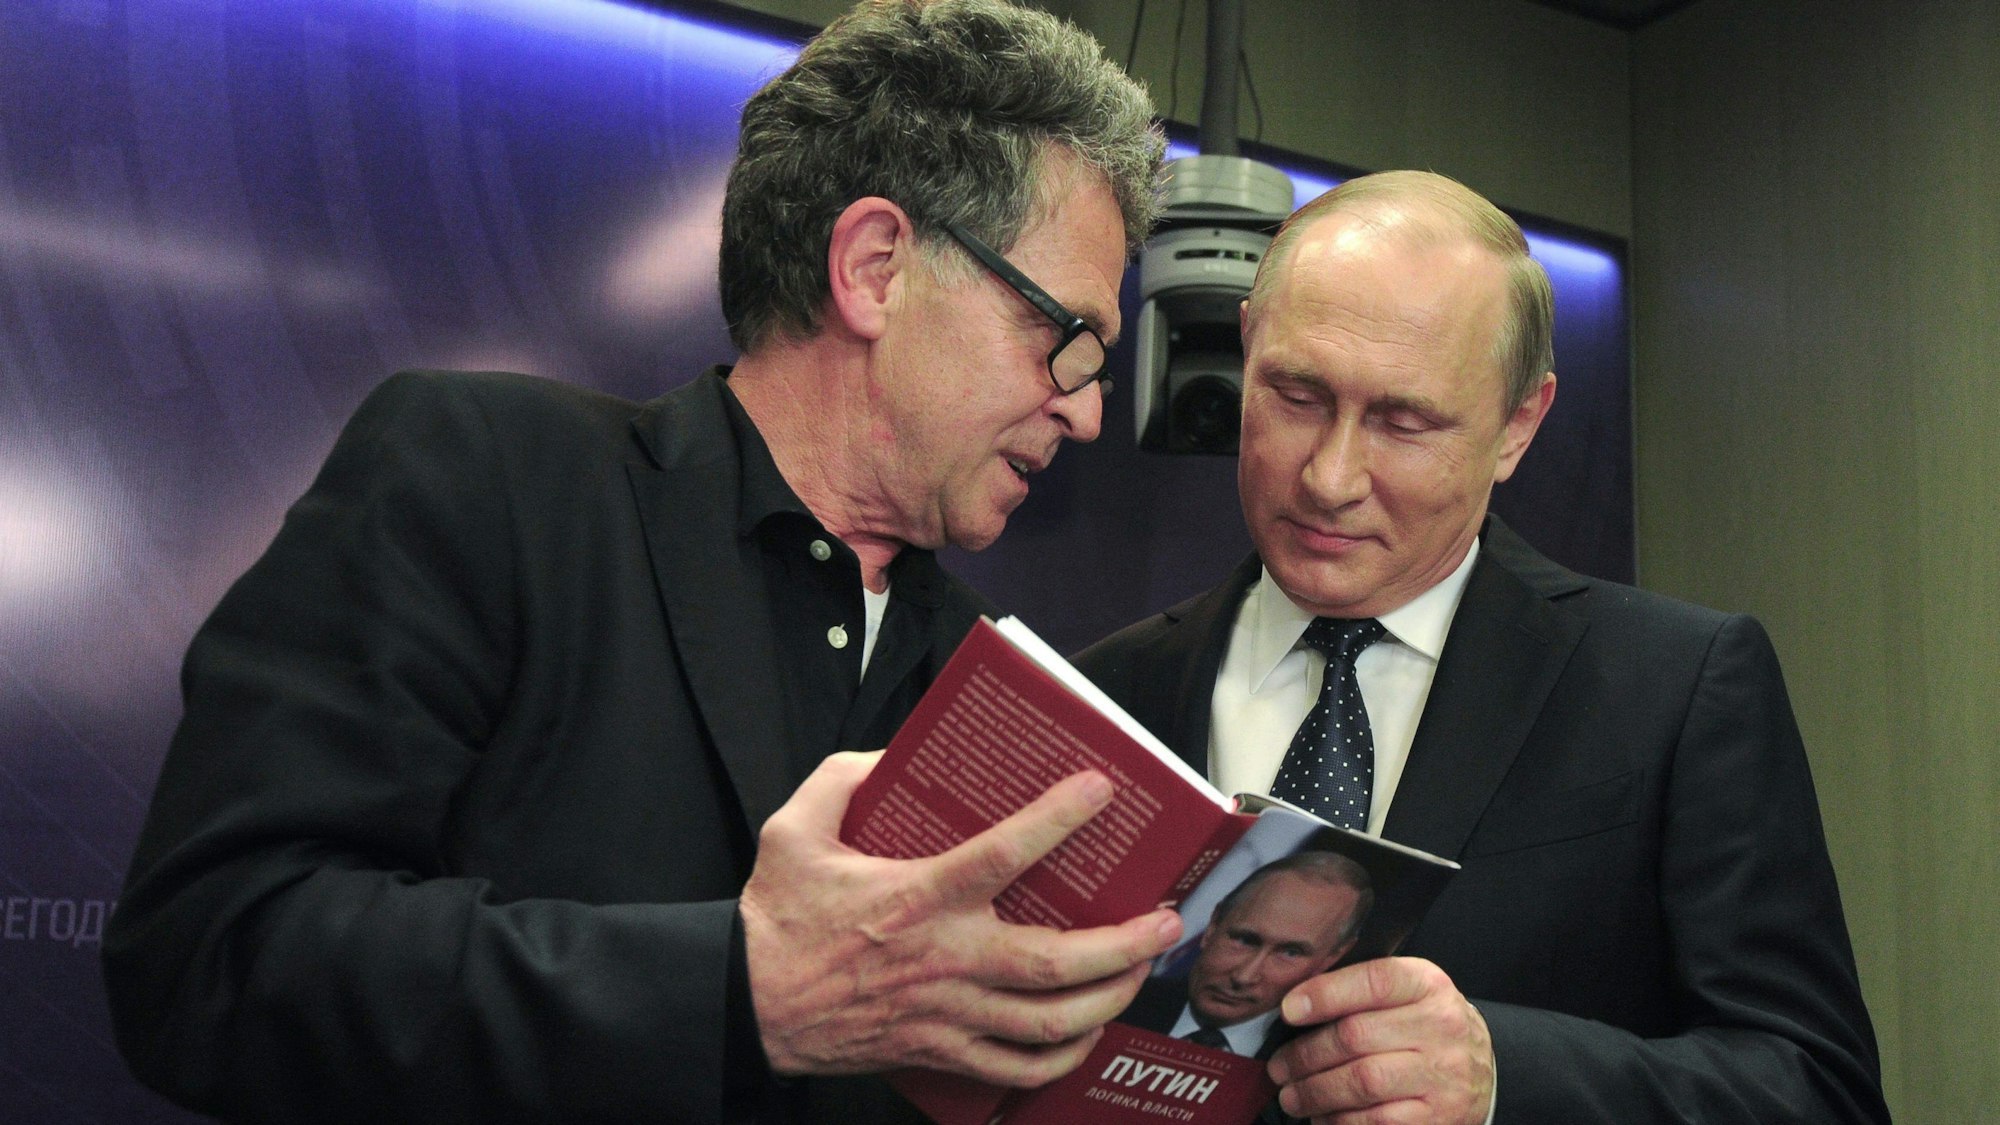 Der deutsche Journalist Hubert Seipel (l.) schaut sich mit Wladimir Putin sein Buch „Putin – The Logic of Power“ an. Dem preisgekrönten Journalisten wird in Medienberichten vorgeworfen, Unterstützung aus Russland für Buchprojekte erhalten zu haben. (Archivbild)